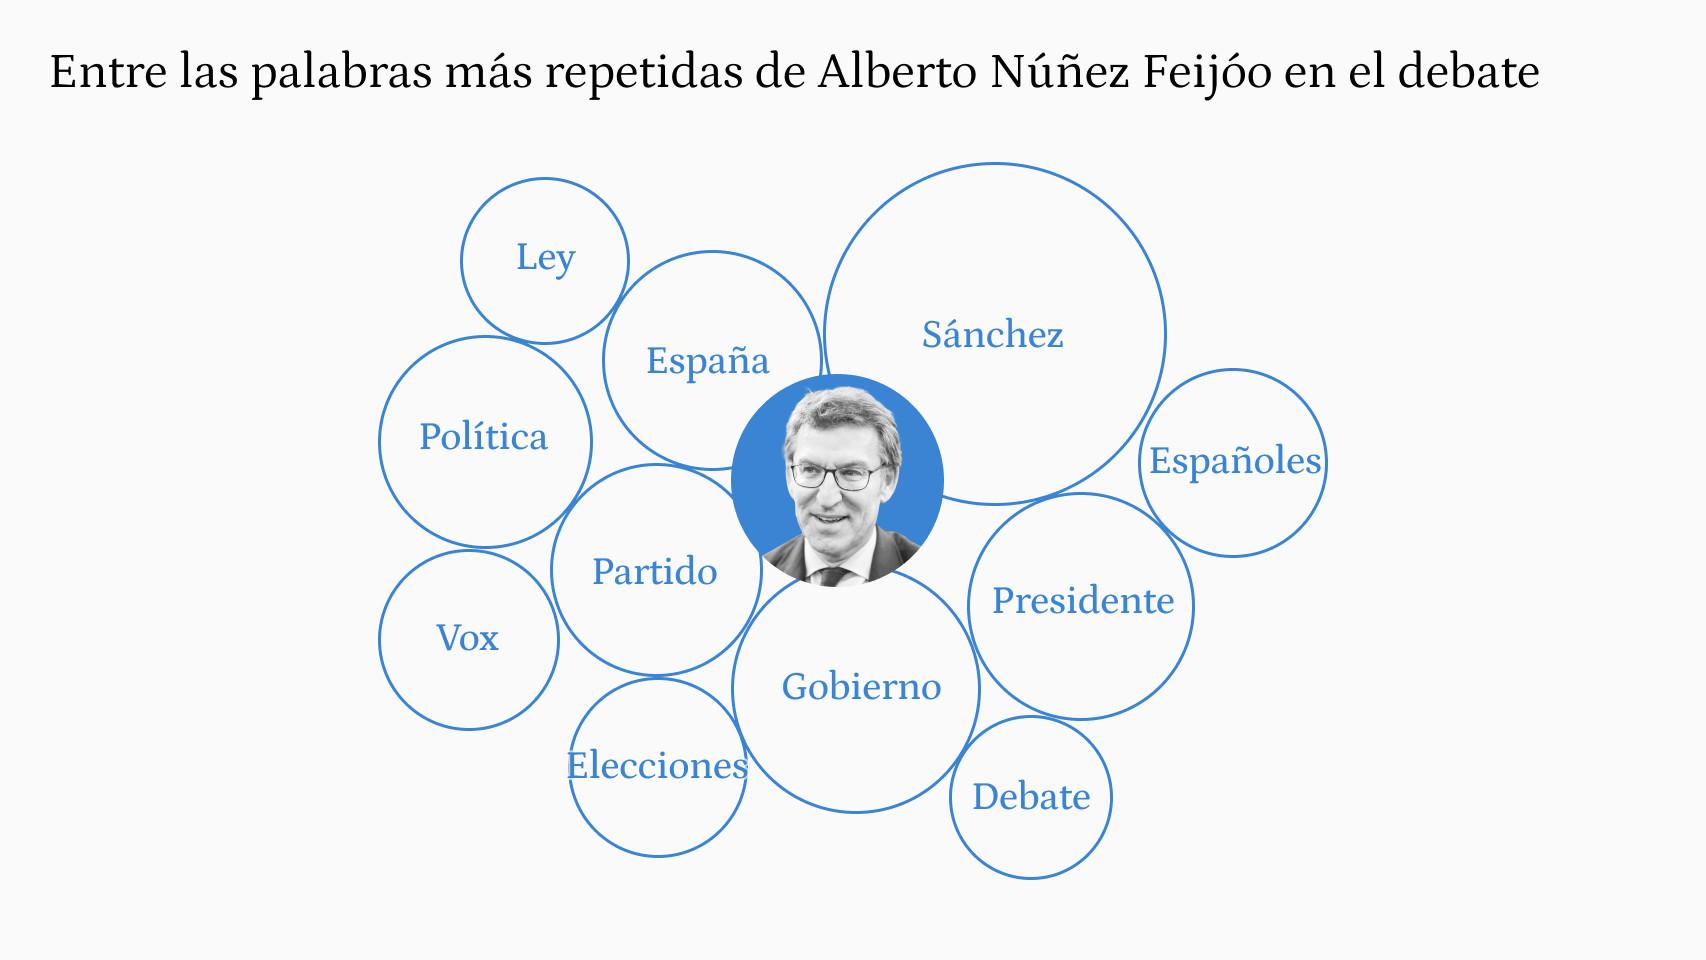 Palabras más repetidas por Alberto Núñez Feijóo en el debate